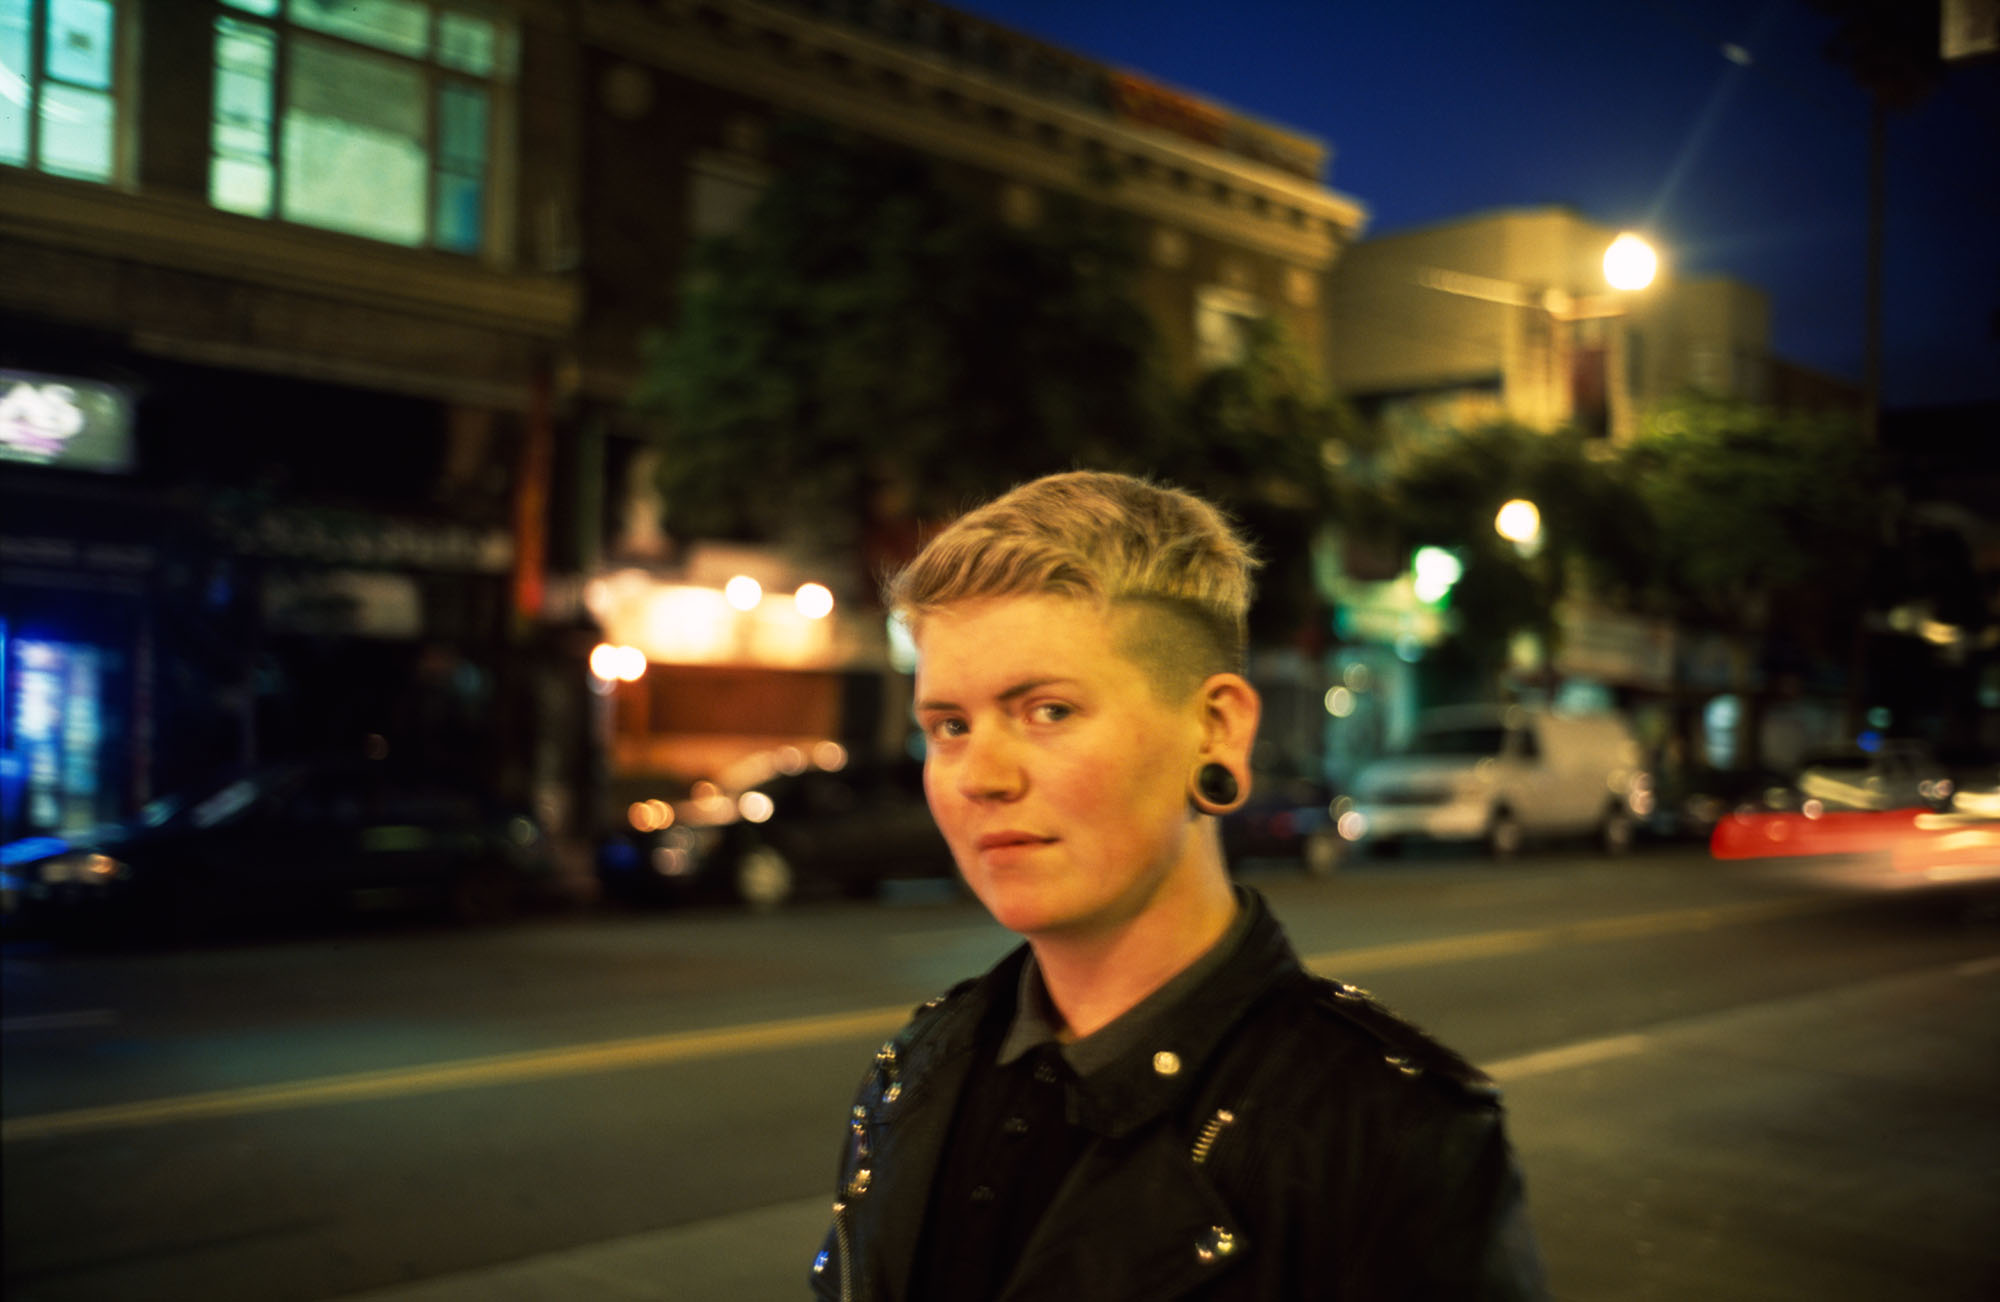 A street-side portrait in San Francisco